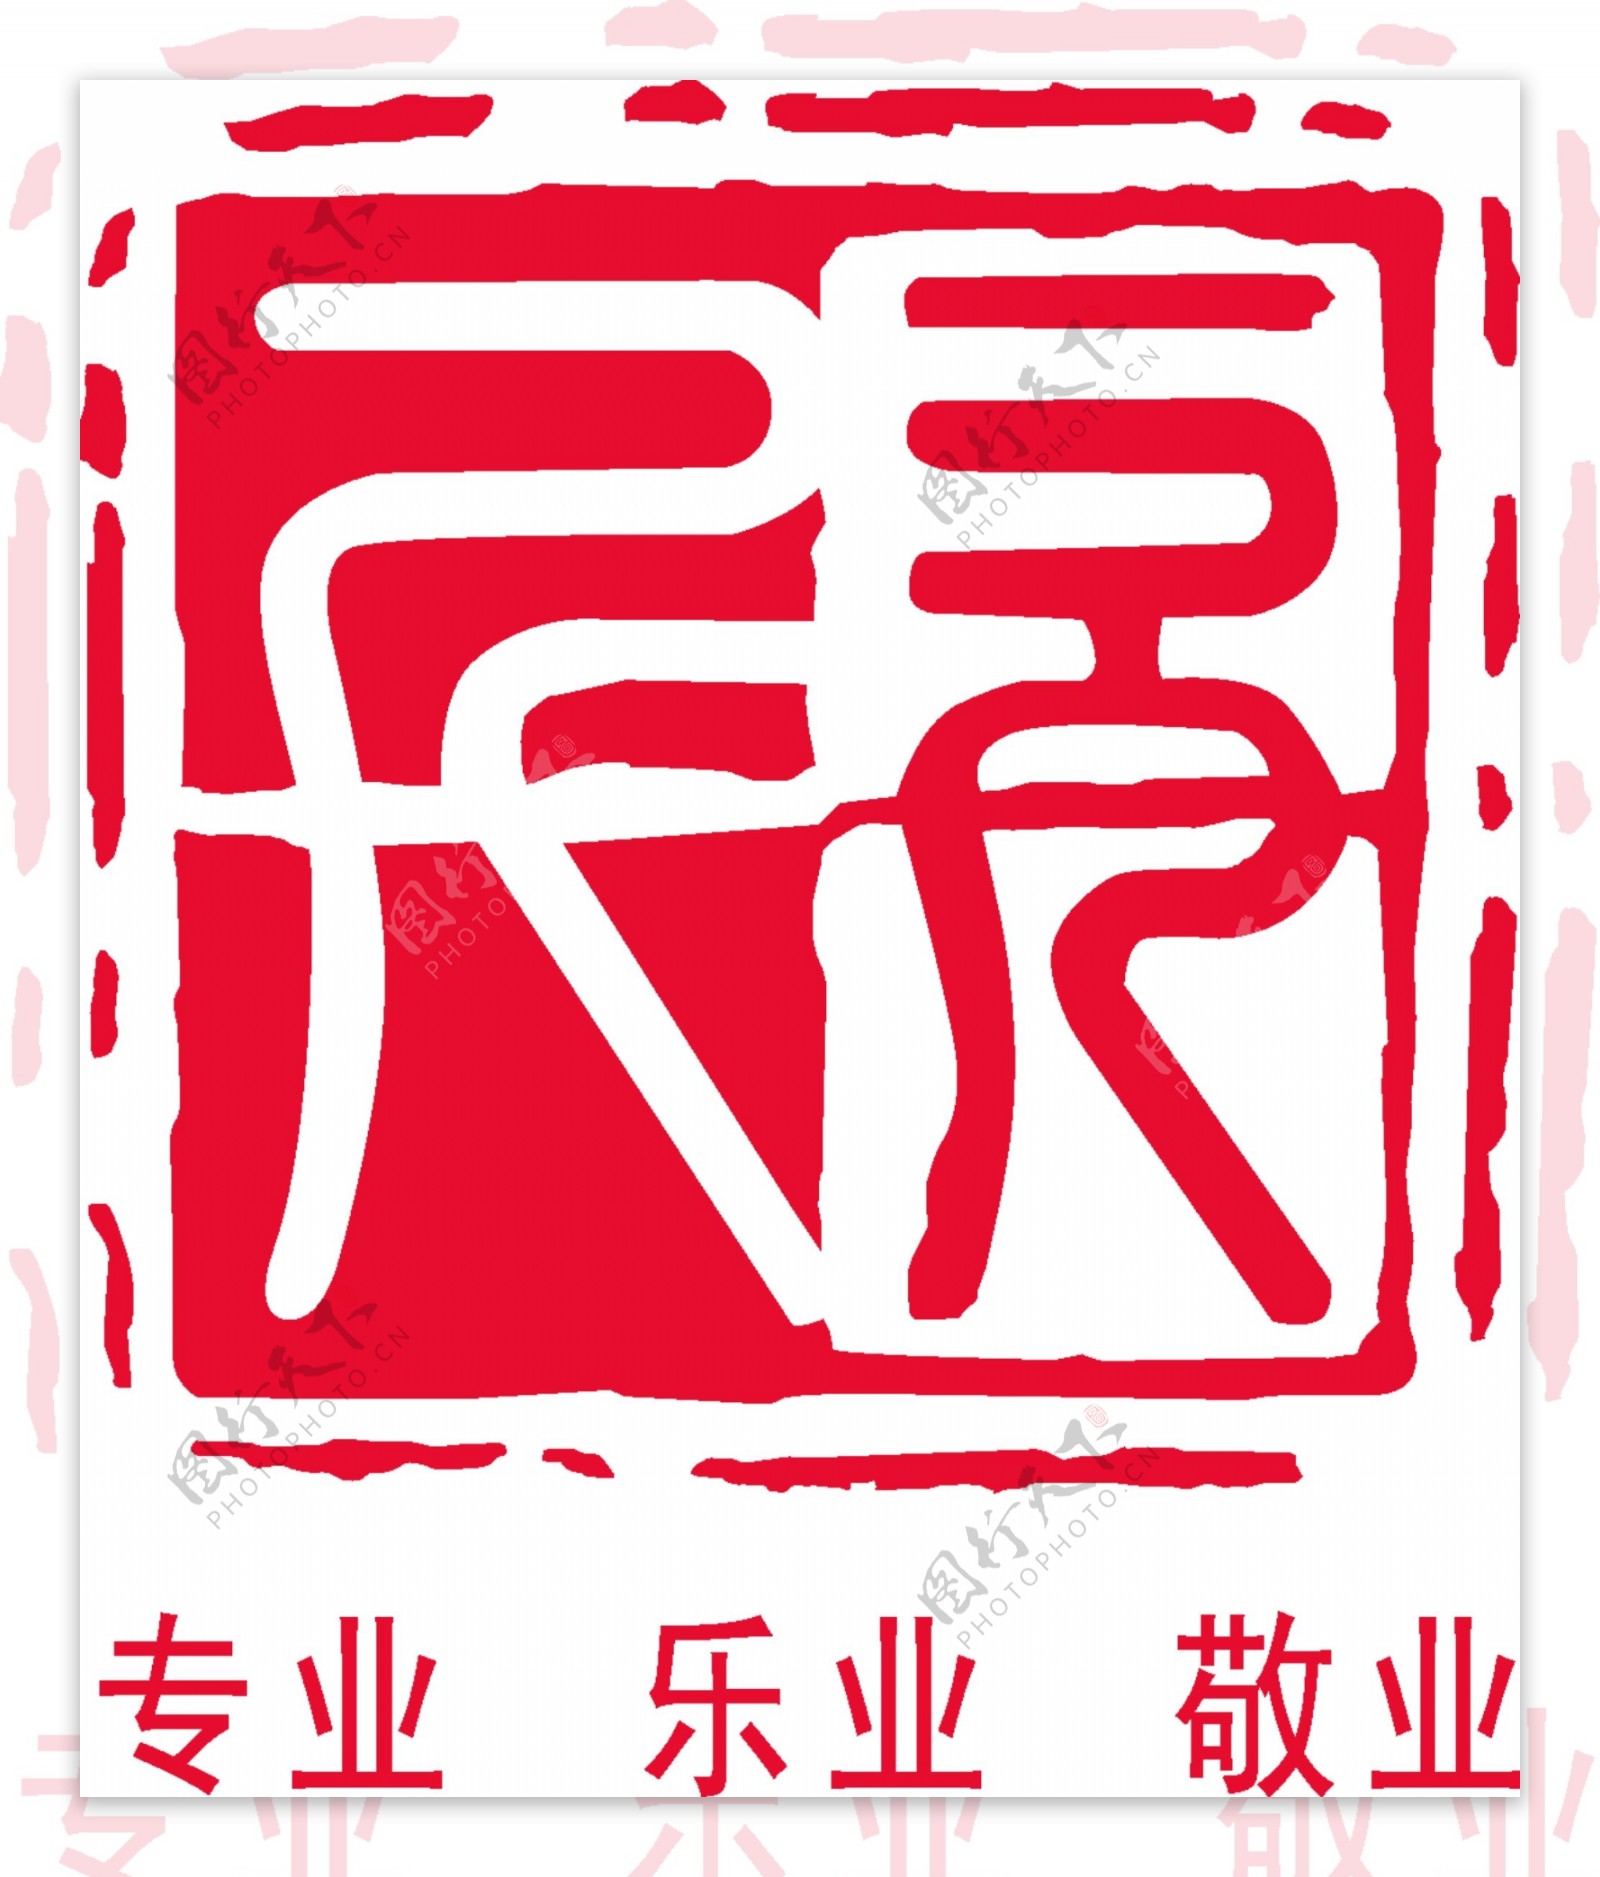 欣旺logo图片